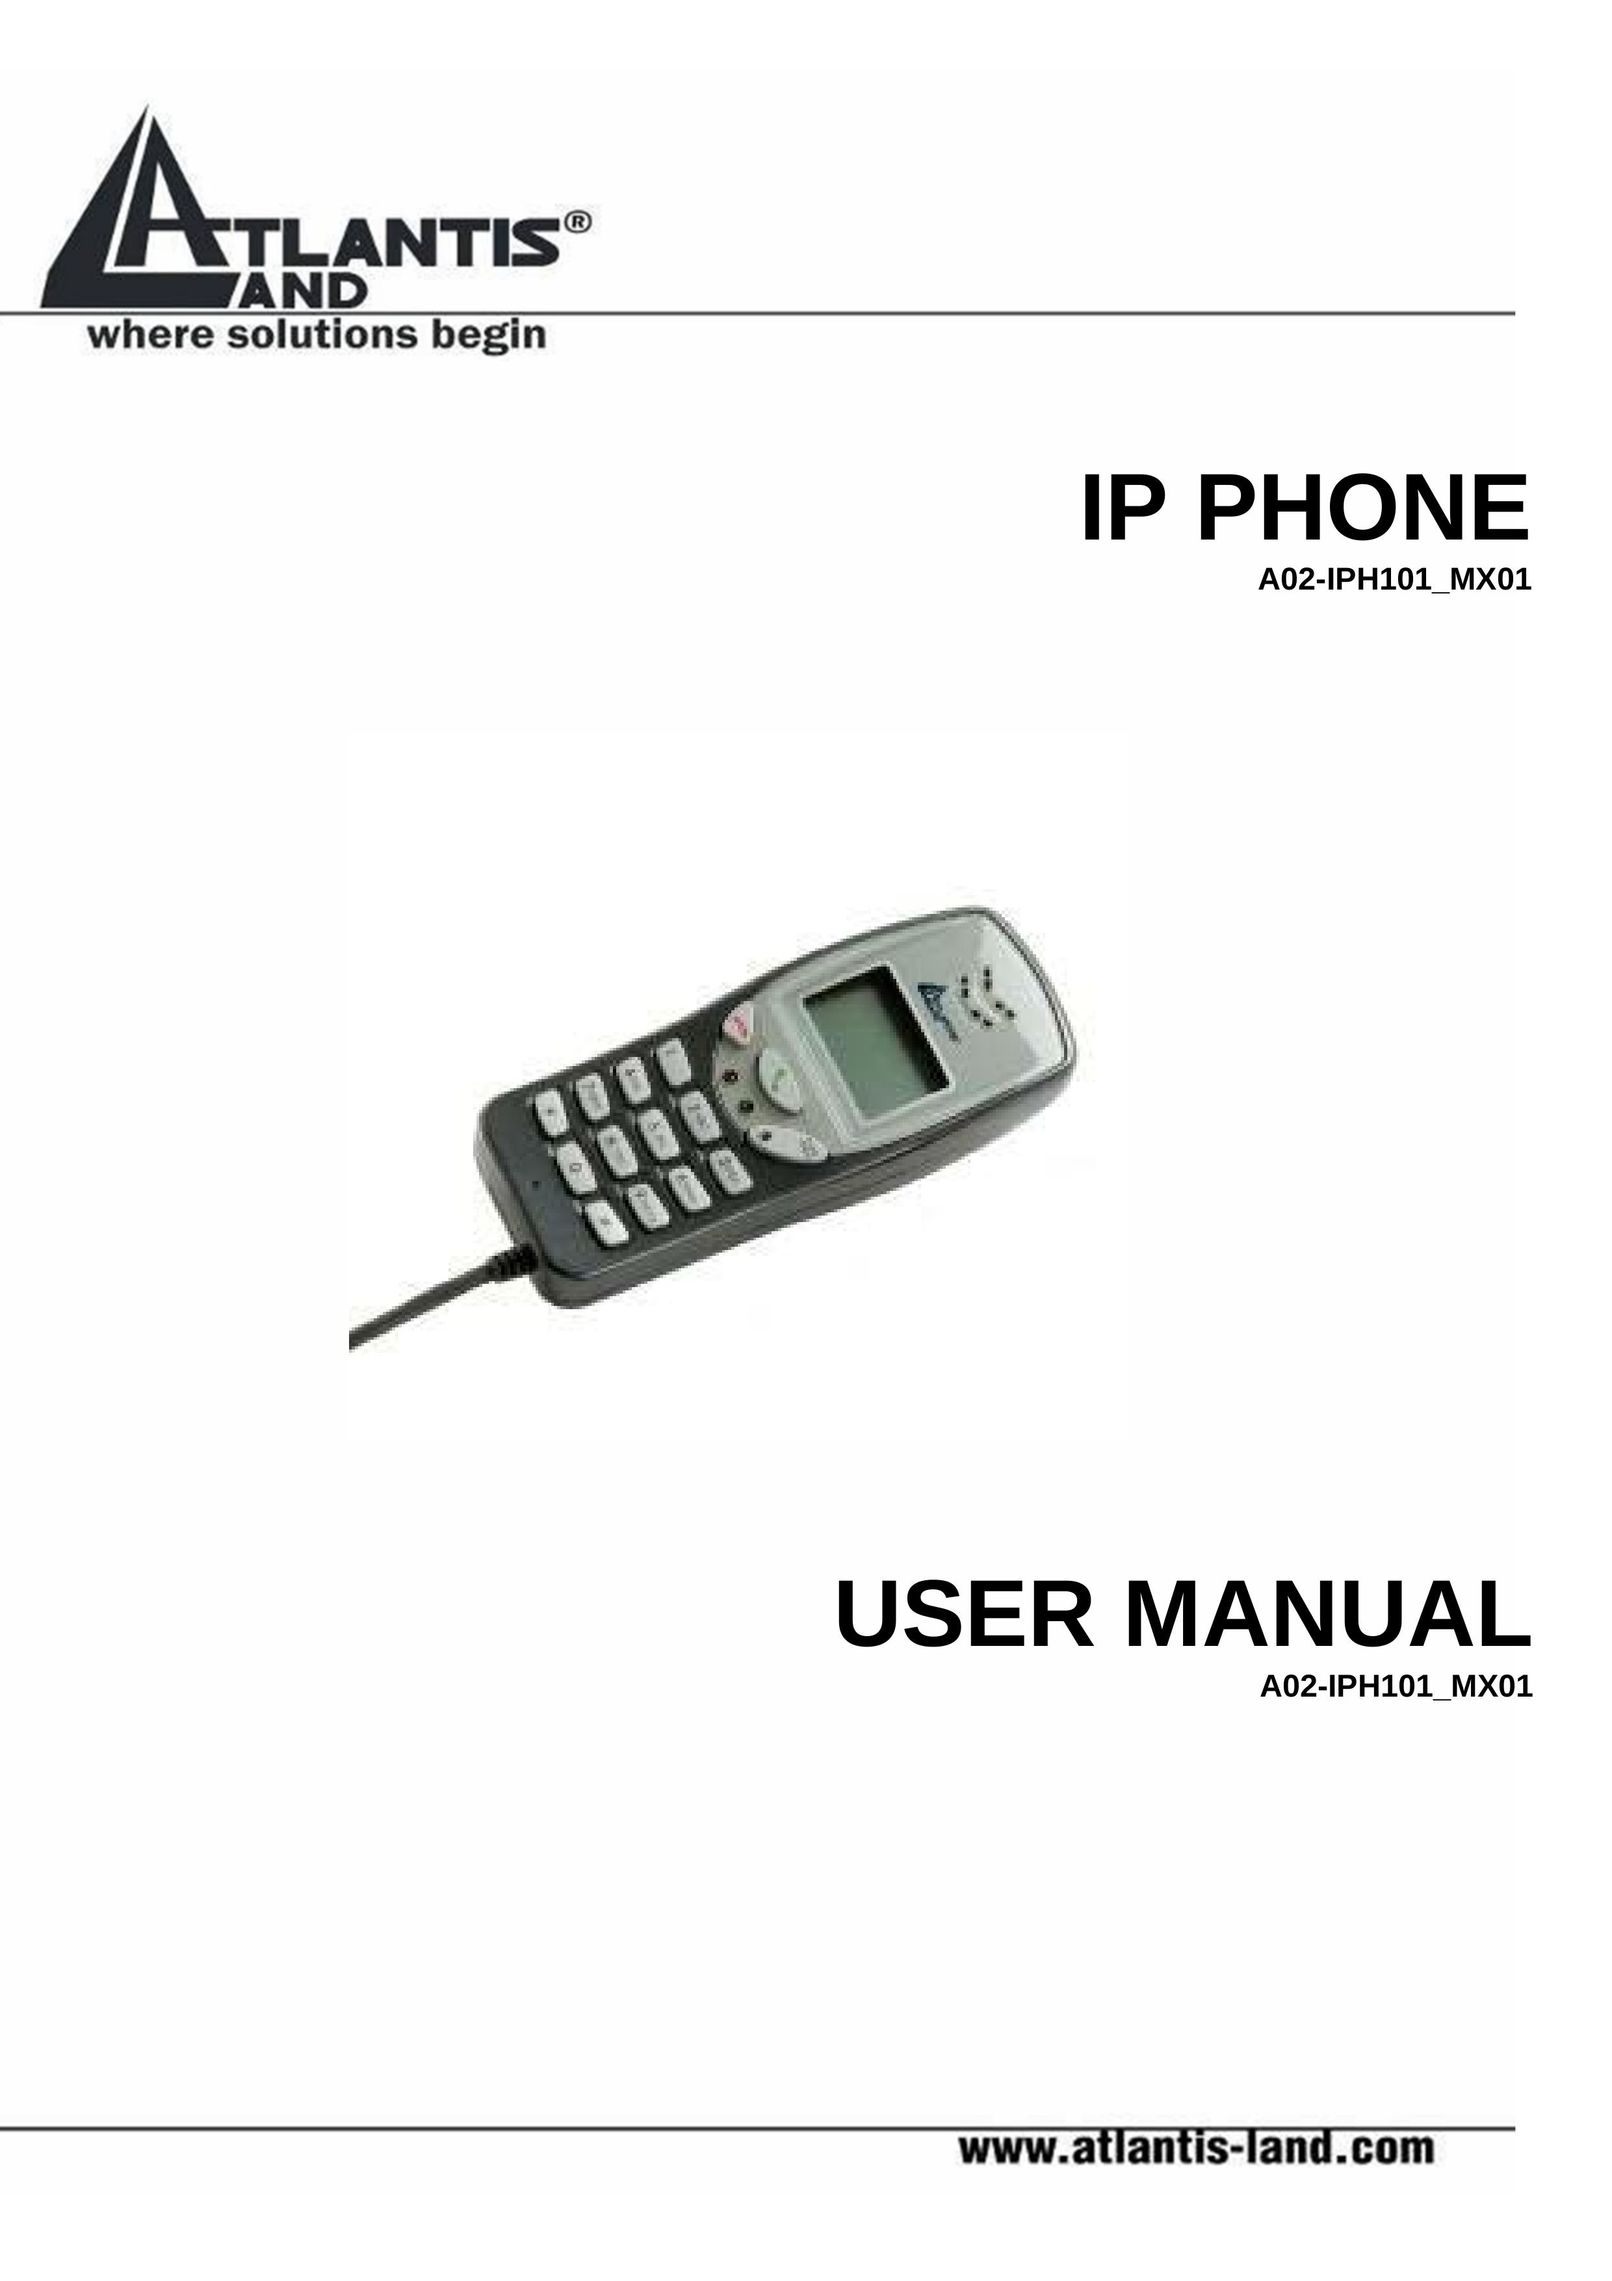 Atlantis Land A02-IPH101_MX01 IP Phone User Manual